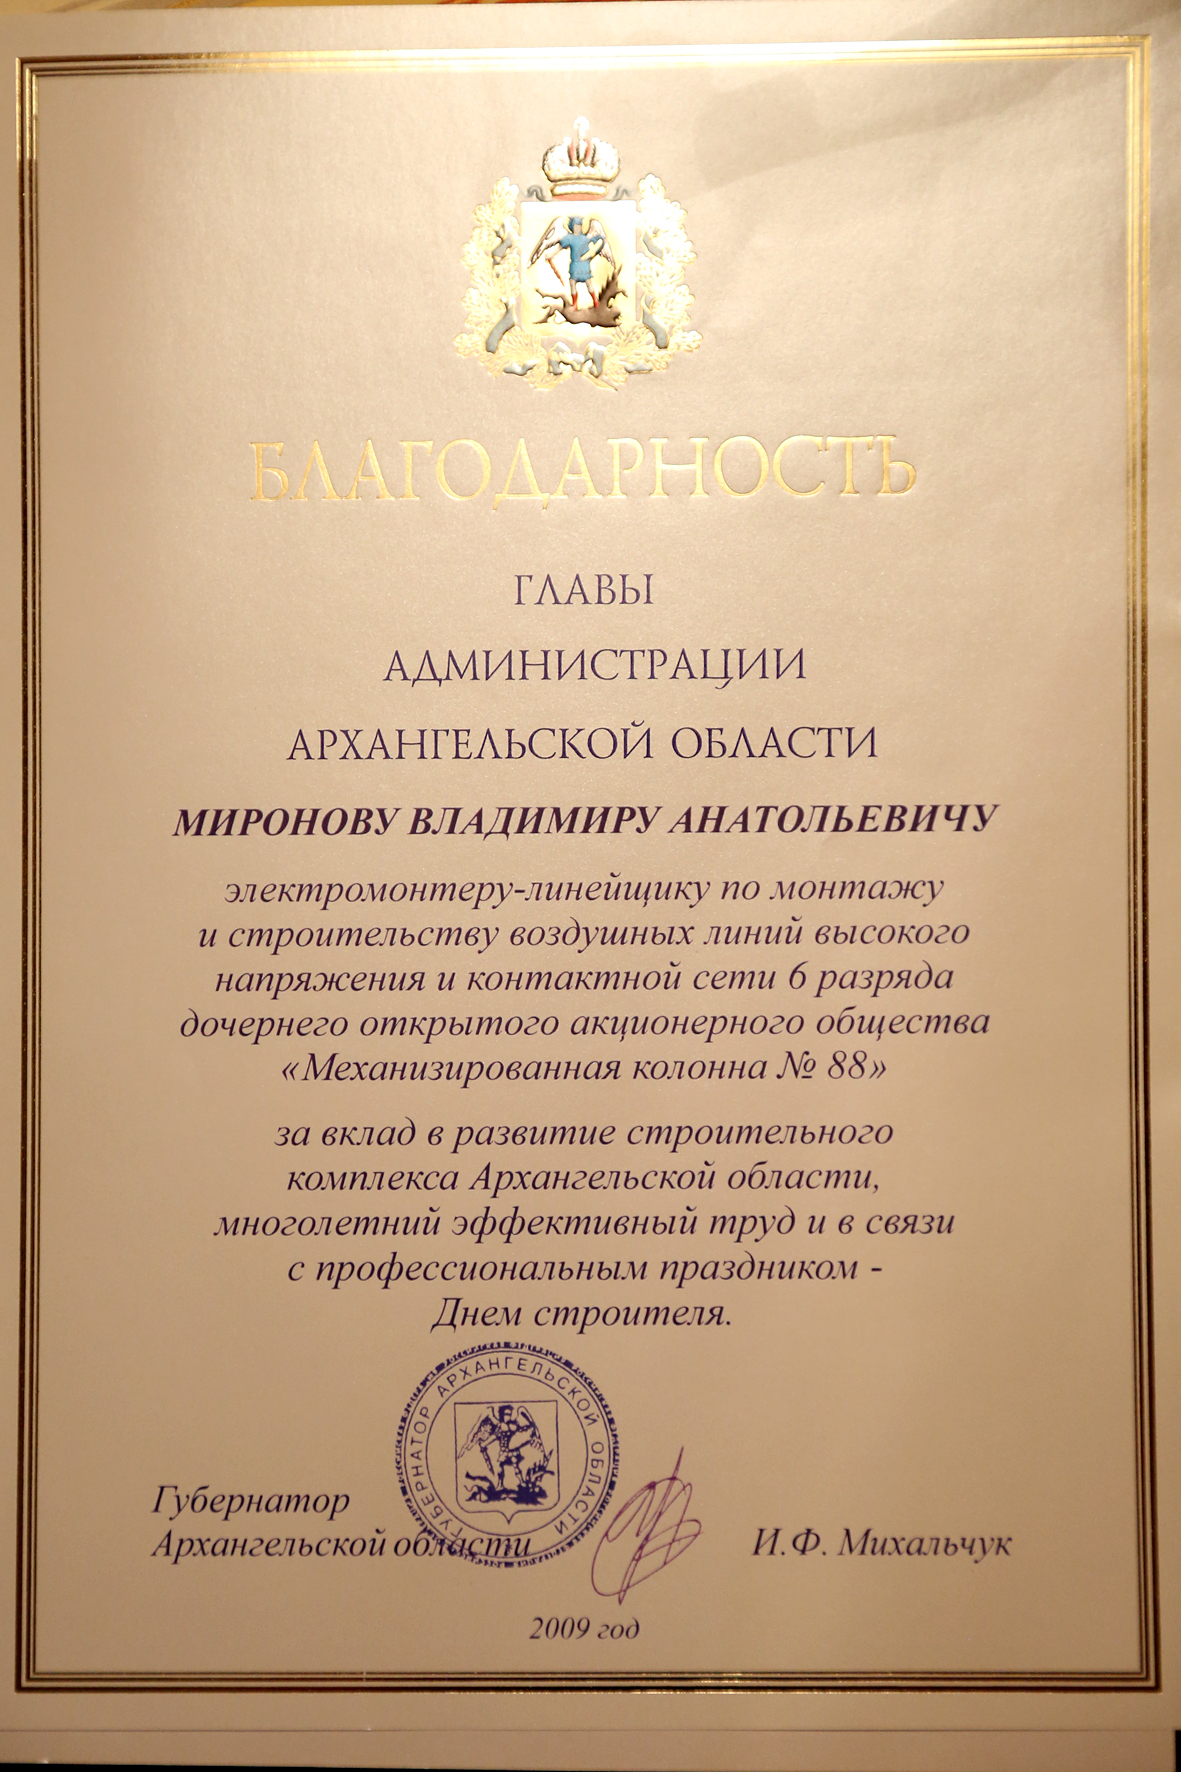 Награждение Благодарностью губернатора Архангельской области в 2009 году